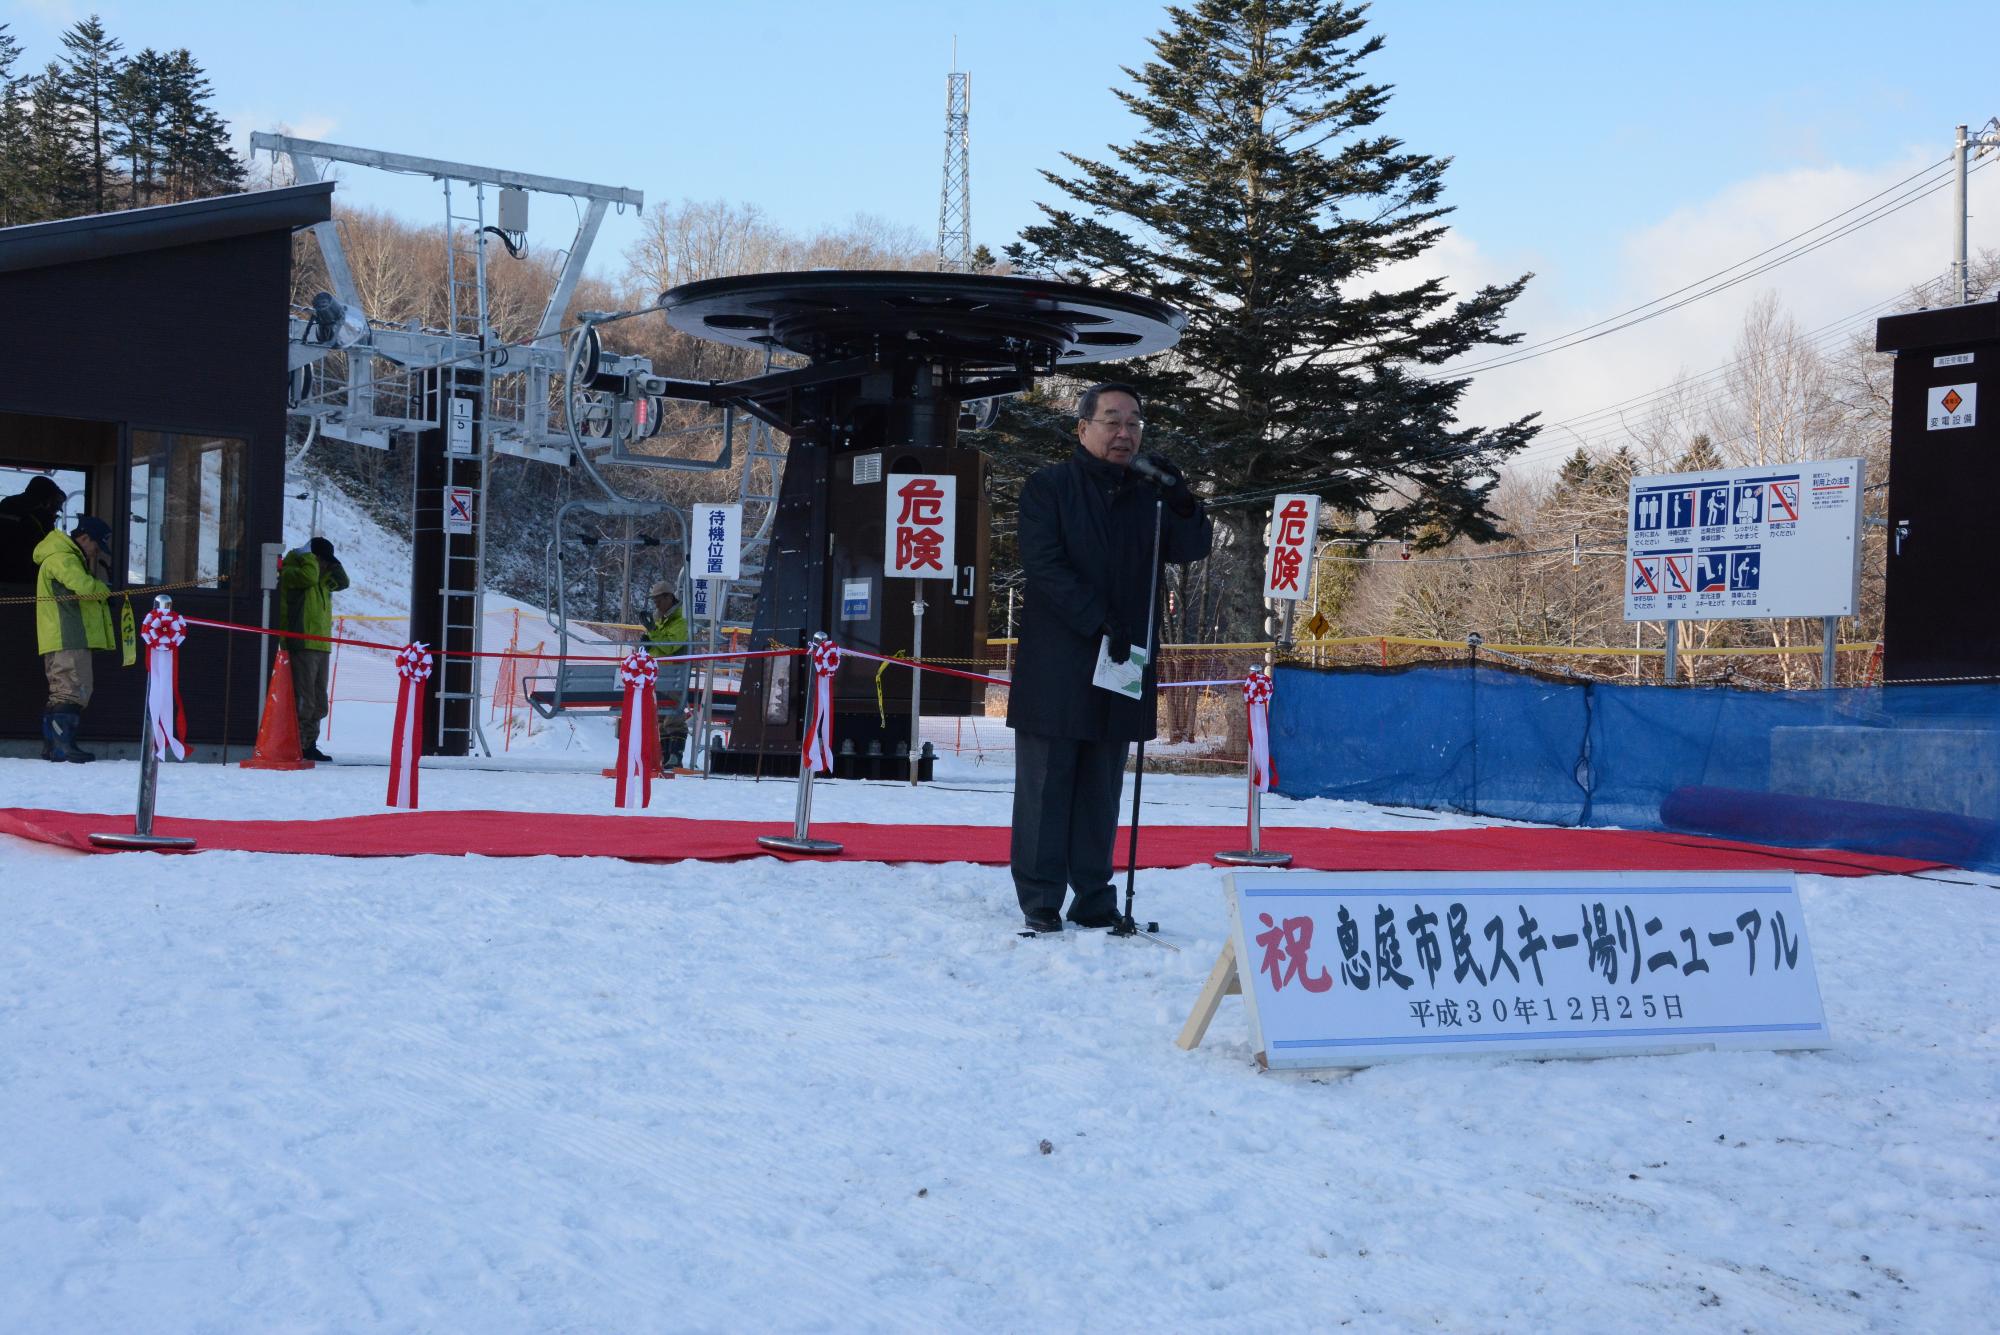 恵庭市民スキー場リニューアルオープンセレモニーで挨拶をする原田市長